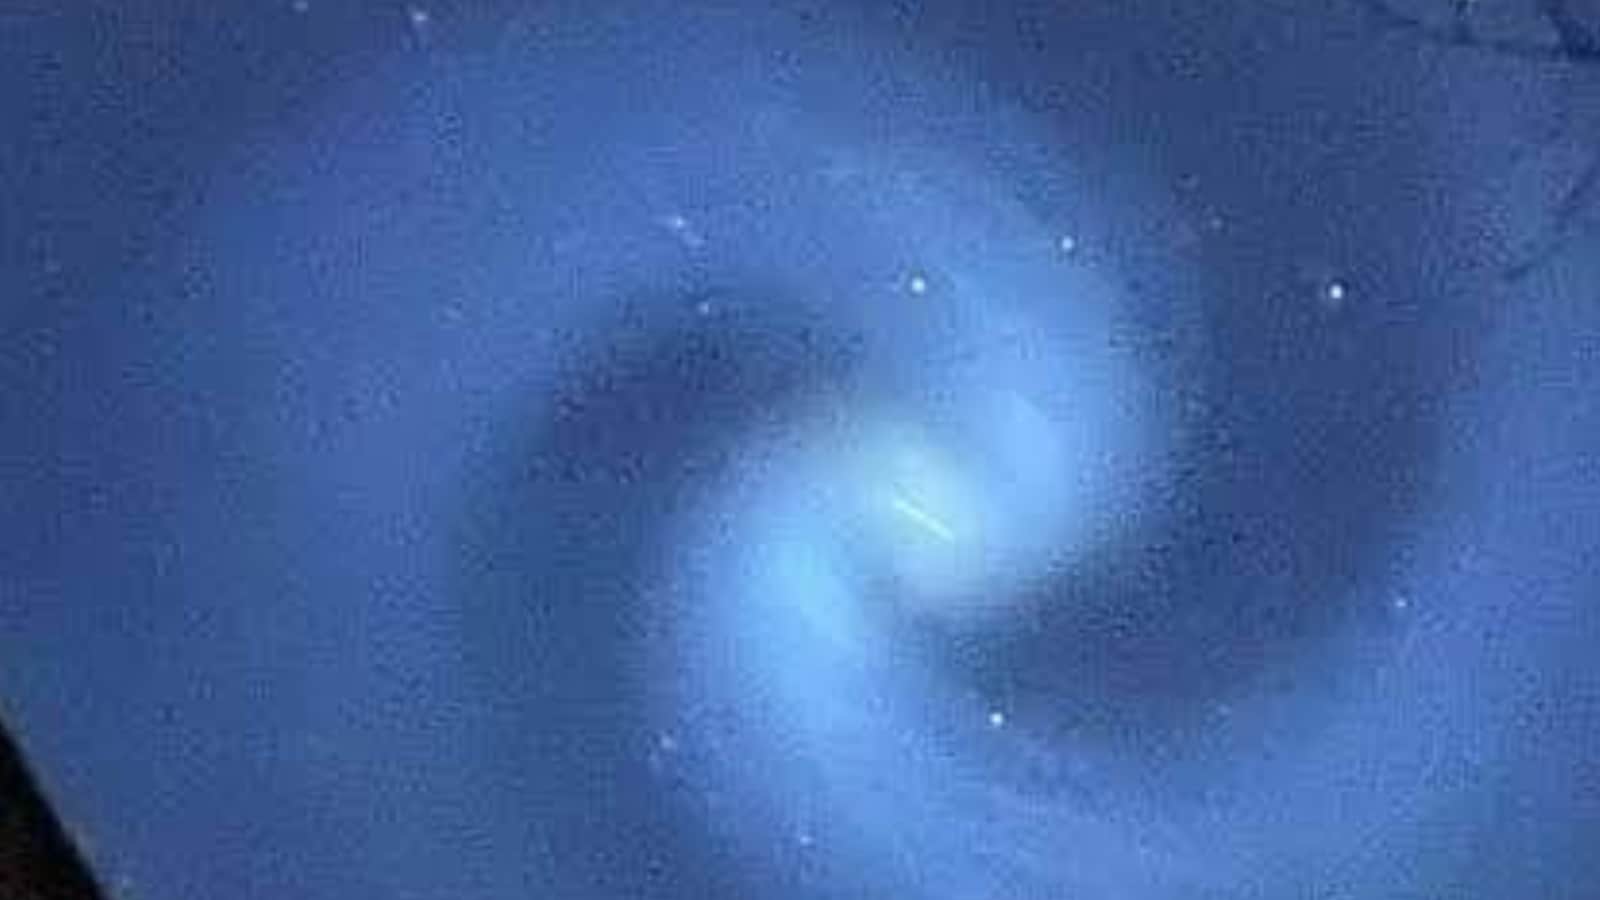 Pusaran cahaya biru telah terdeteksi di langit Selandia Baru, membuat para pengamat bintang kebingungan